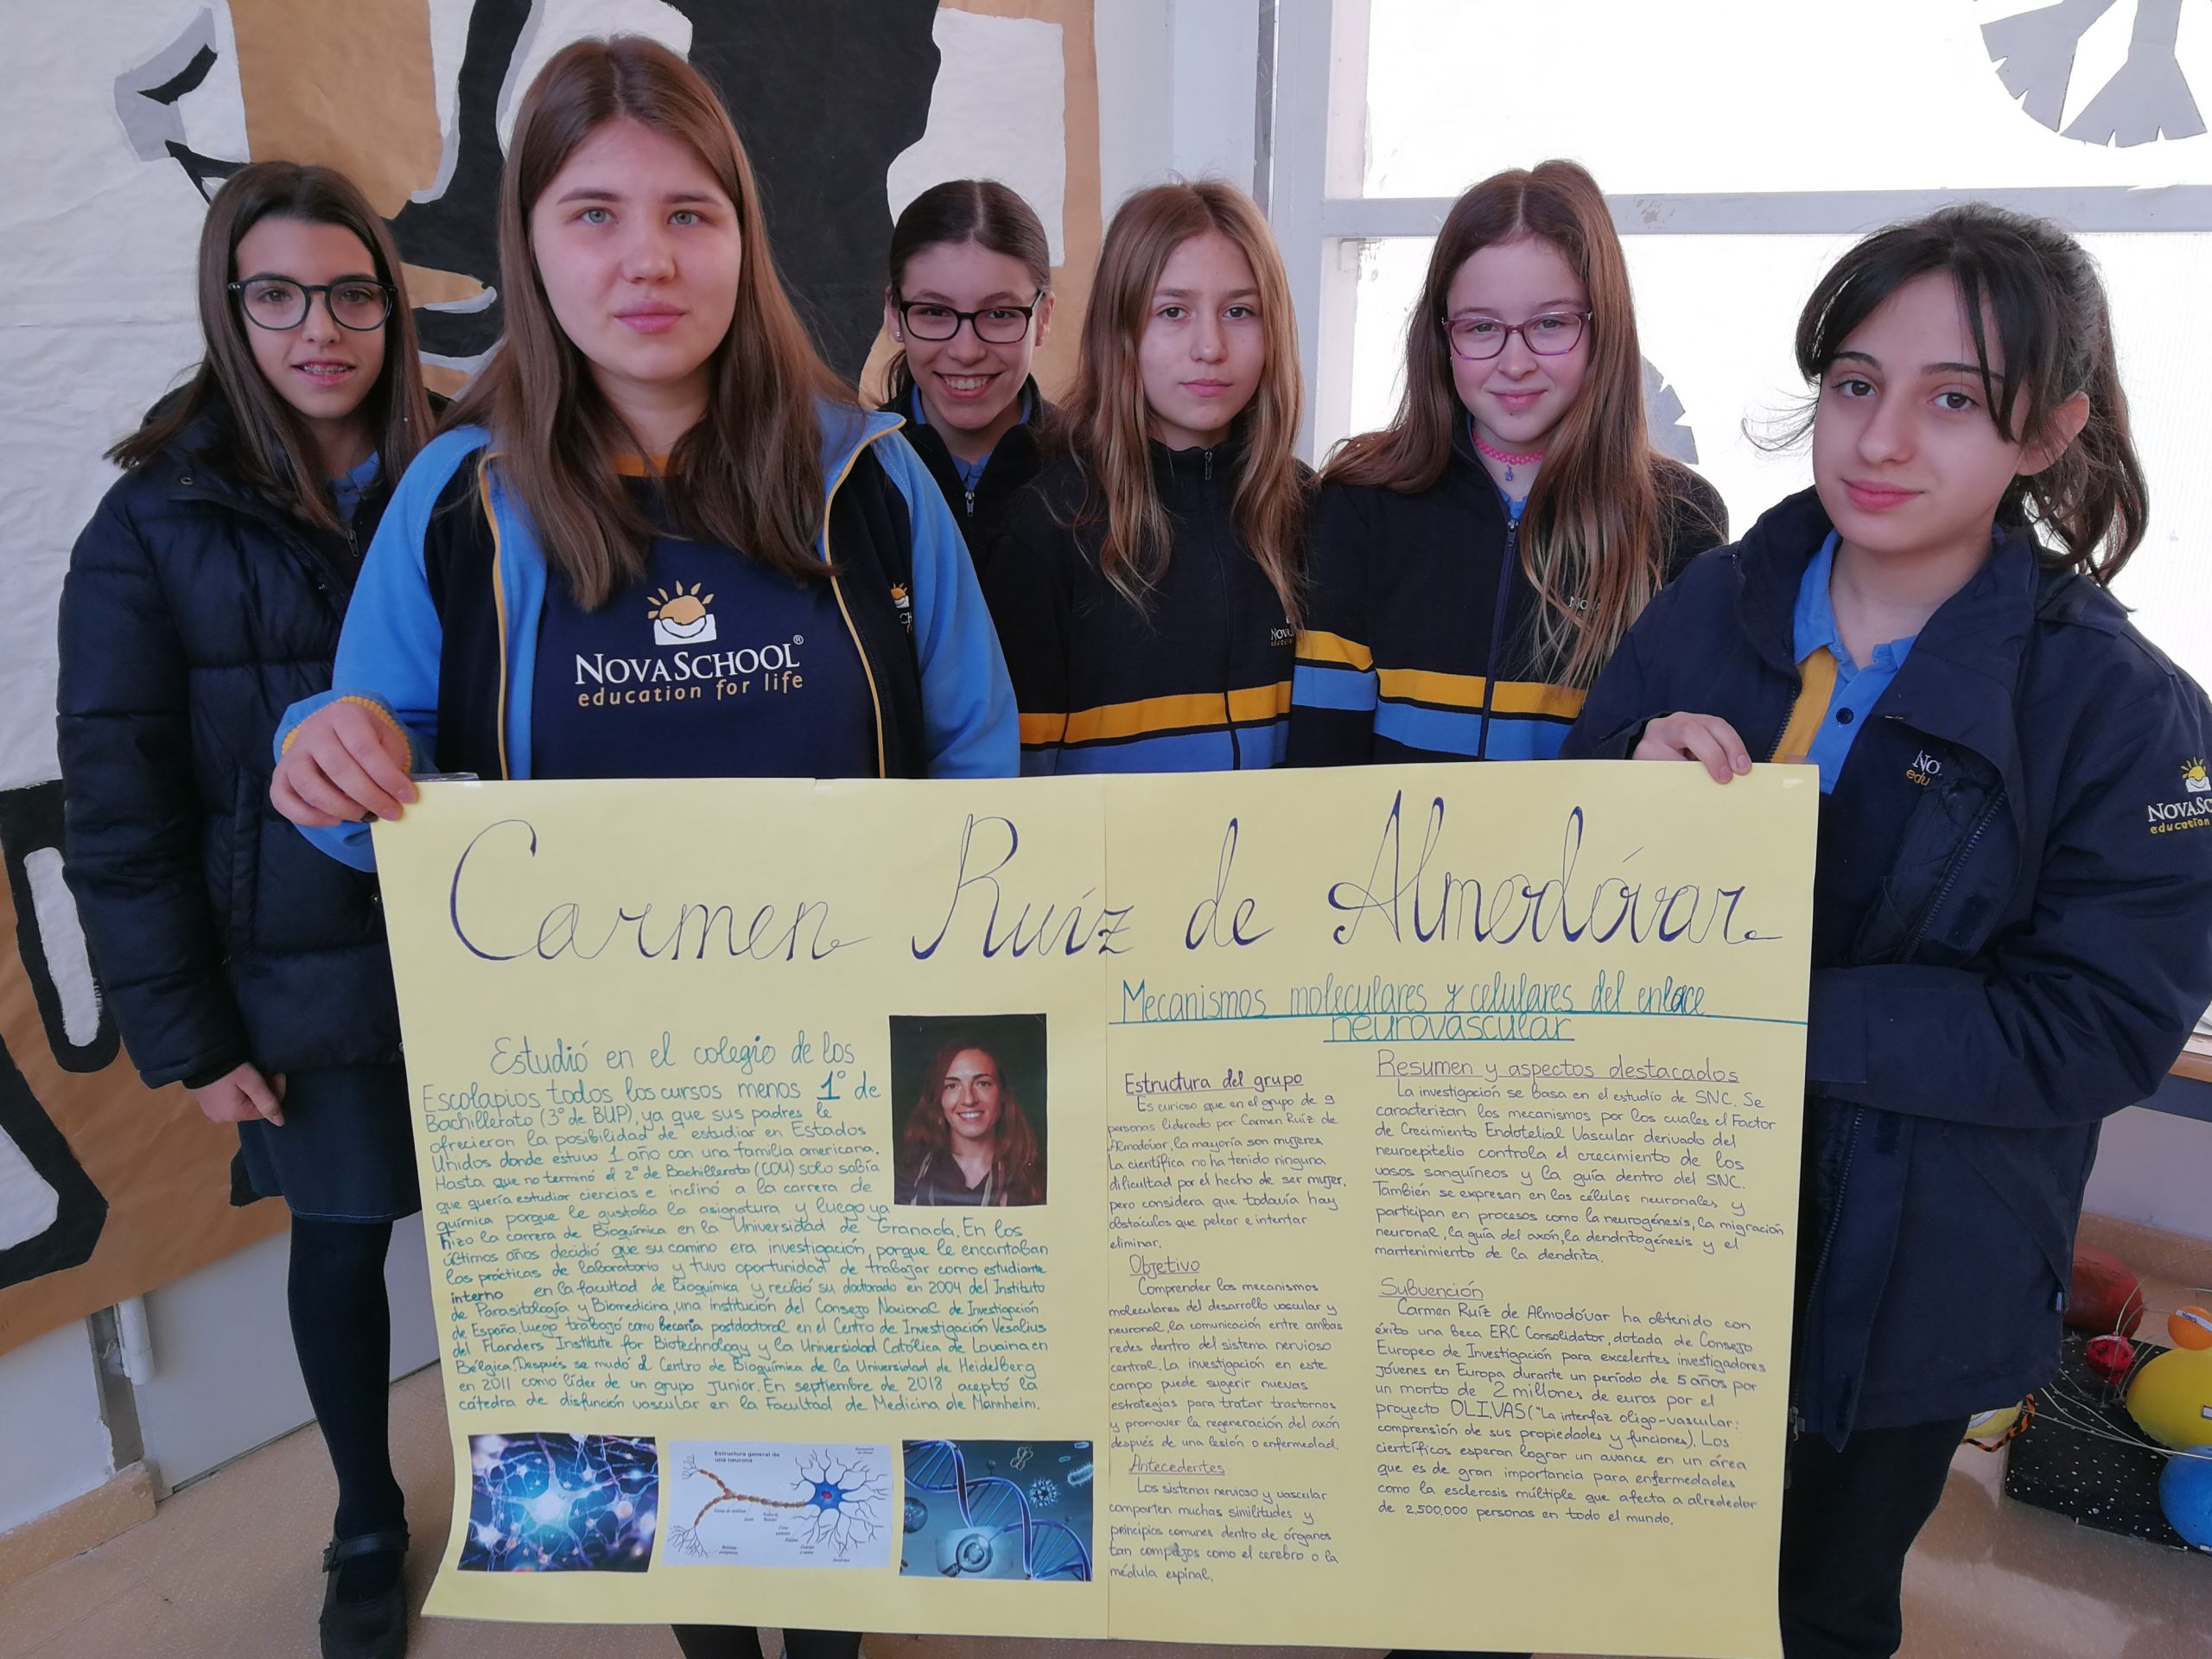 Alumnas de bachillerato mostrando su proyecto sobre Carmen Ruiz de Almodóvar.